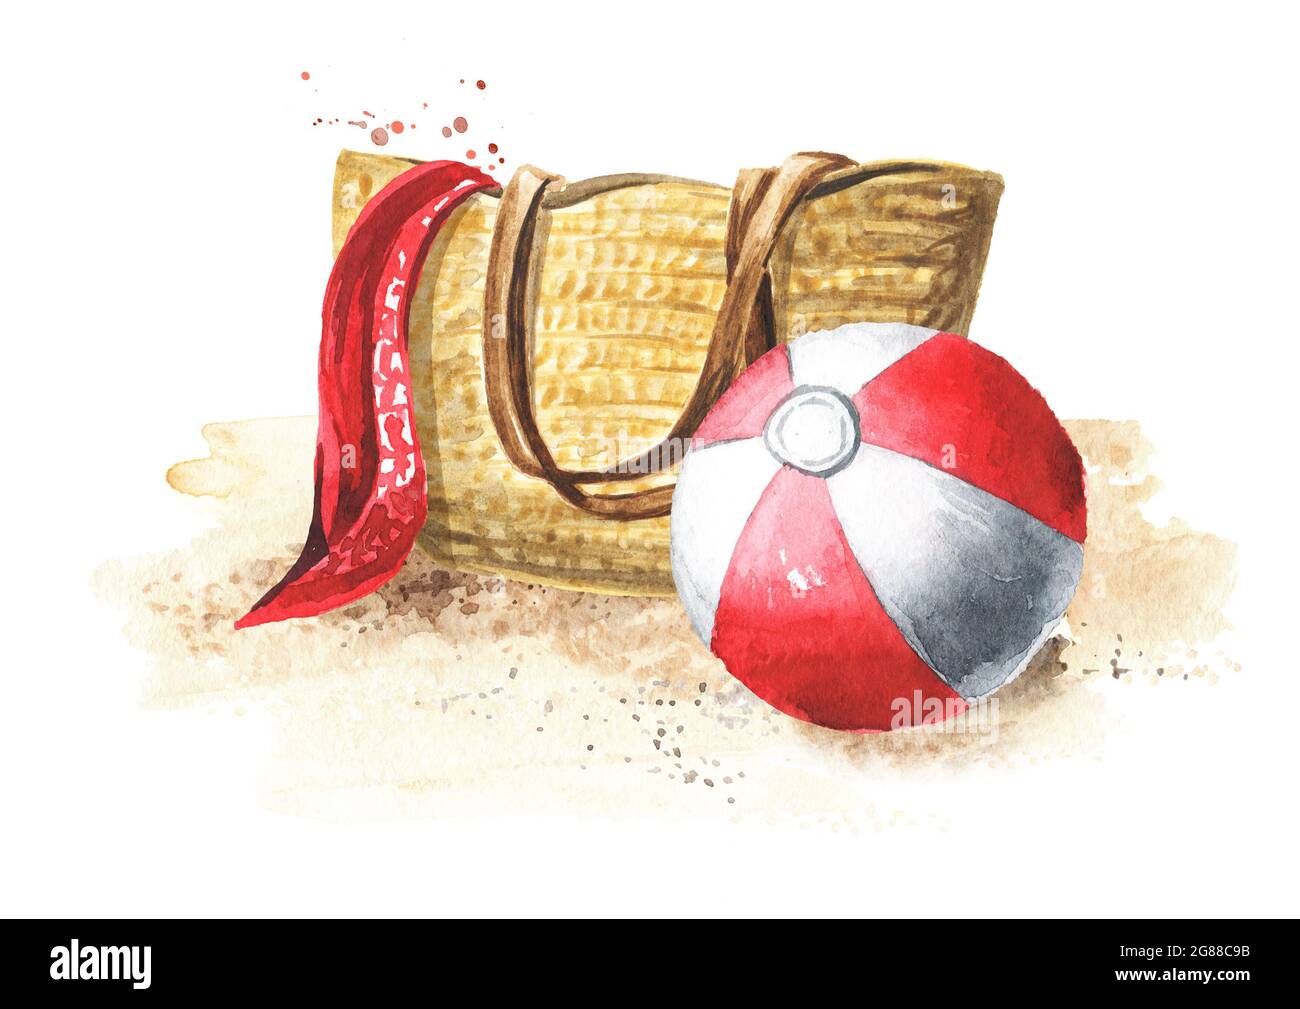 Strandtasche aus Korbgeflecht mit rotem Schal und aufblasbarem Beach Colour Ball auf rhe Sand. Handgezeichnete Aquarelldarstellung isoliert auf weißem Hintergrund Stockfoto